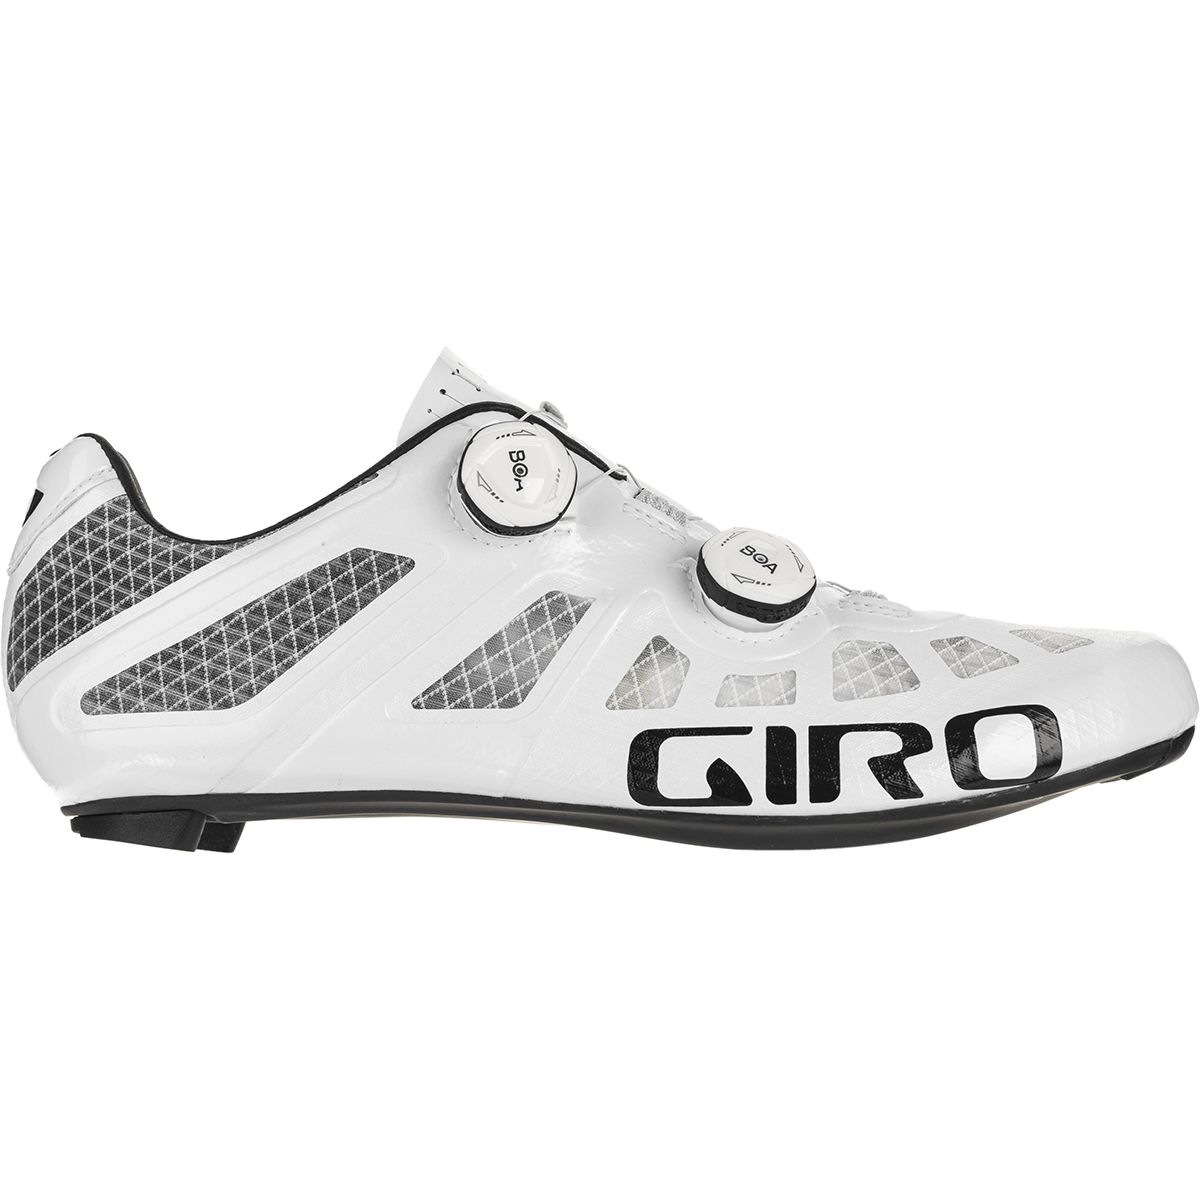 Photos - Cycling Shoes Giro Imperial Cycling Shoe - Men's 